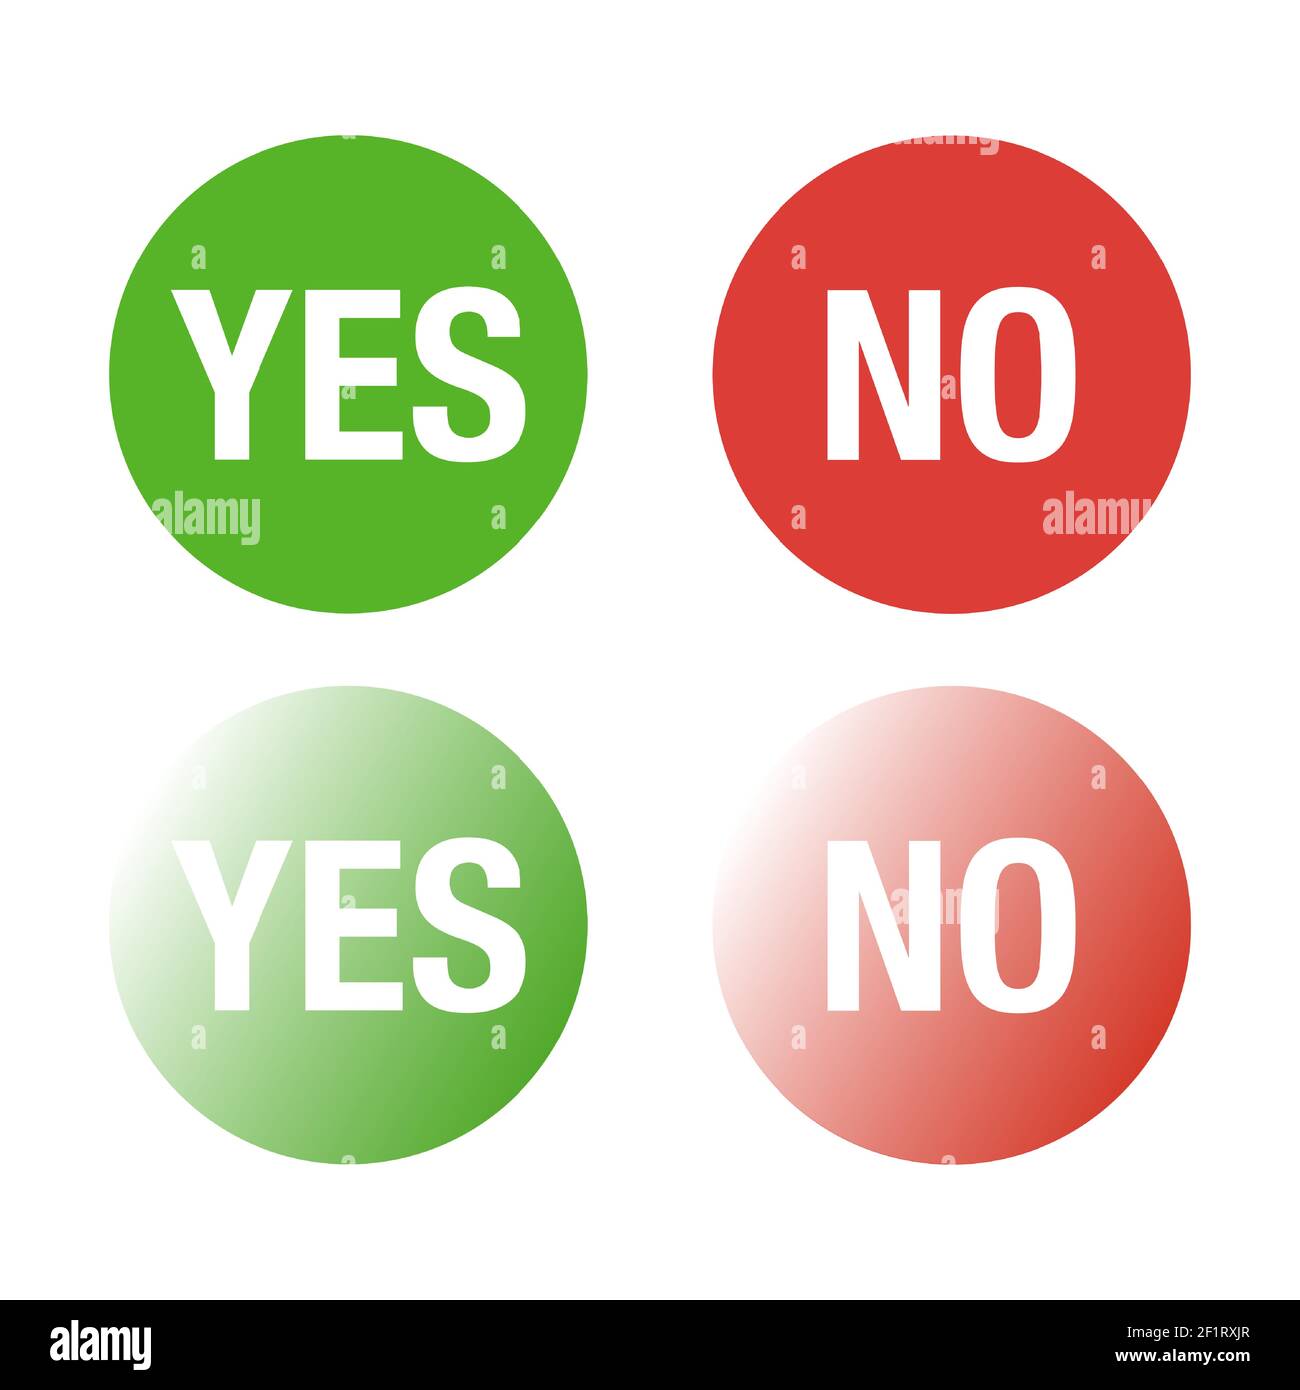 Pulsanti Sì e No nei colori verde e rosso. Illustrazione Vettoriale